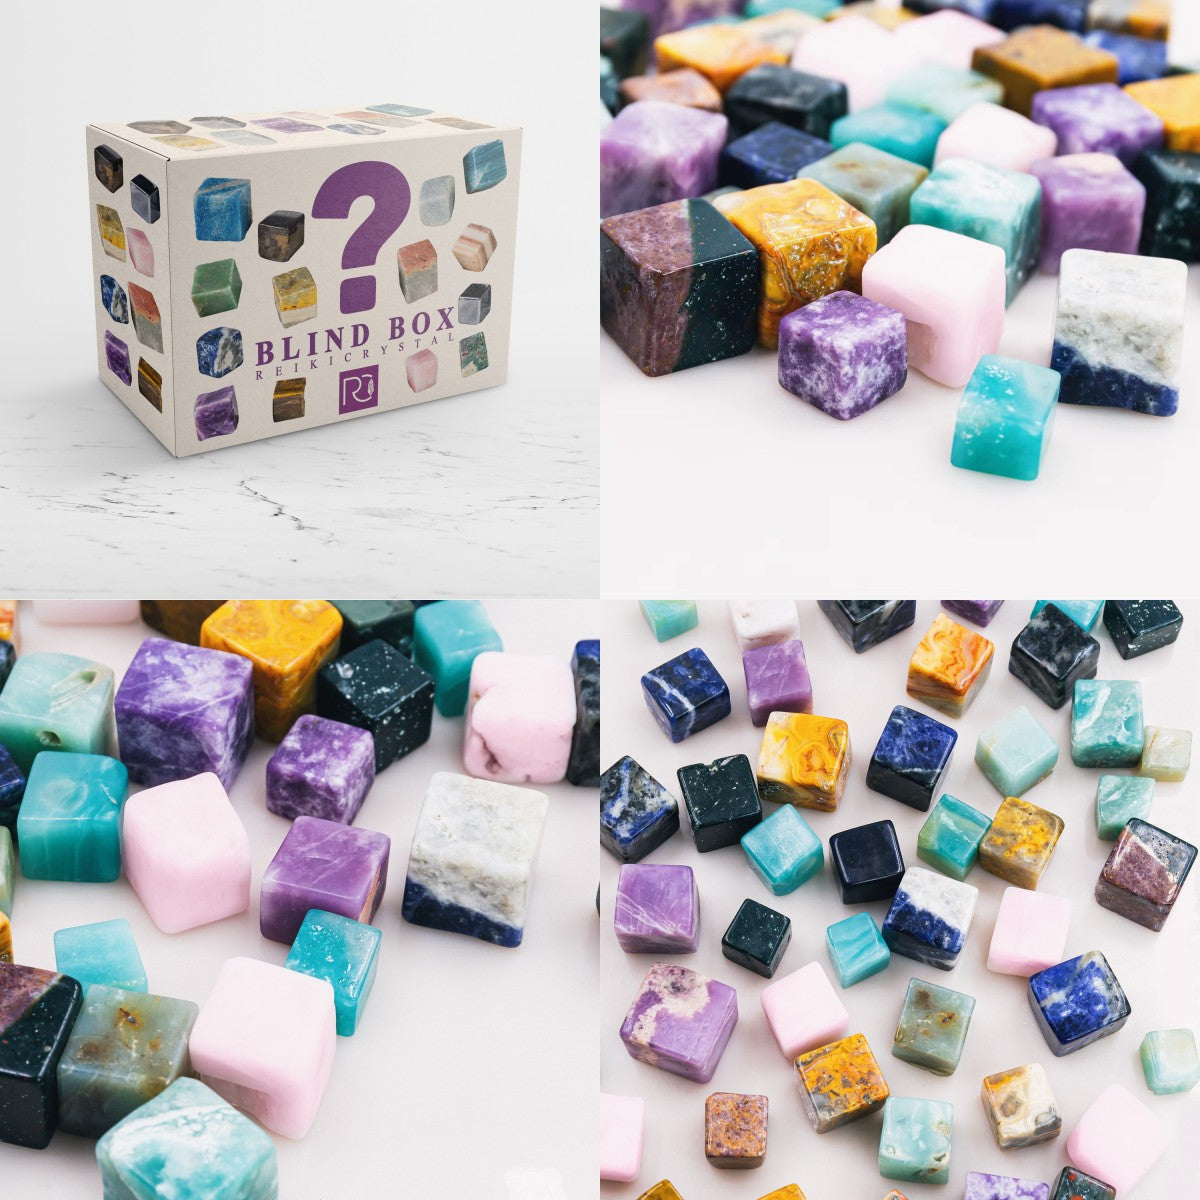 Reikistal 【Abundance energy/power】Mystery Crystal Cube Box